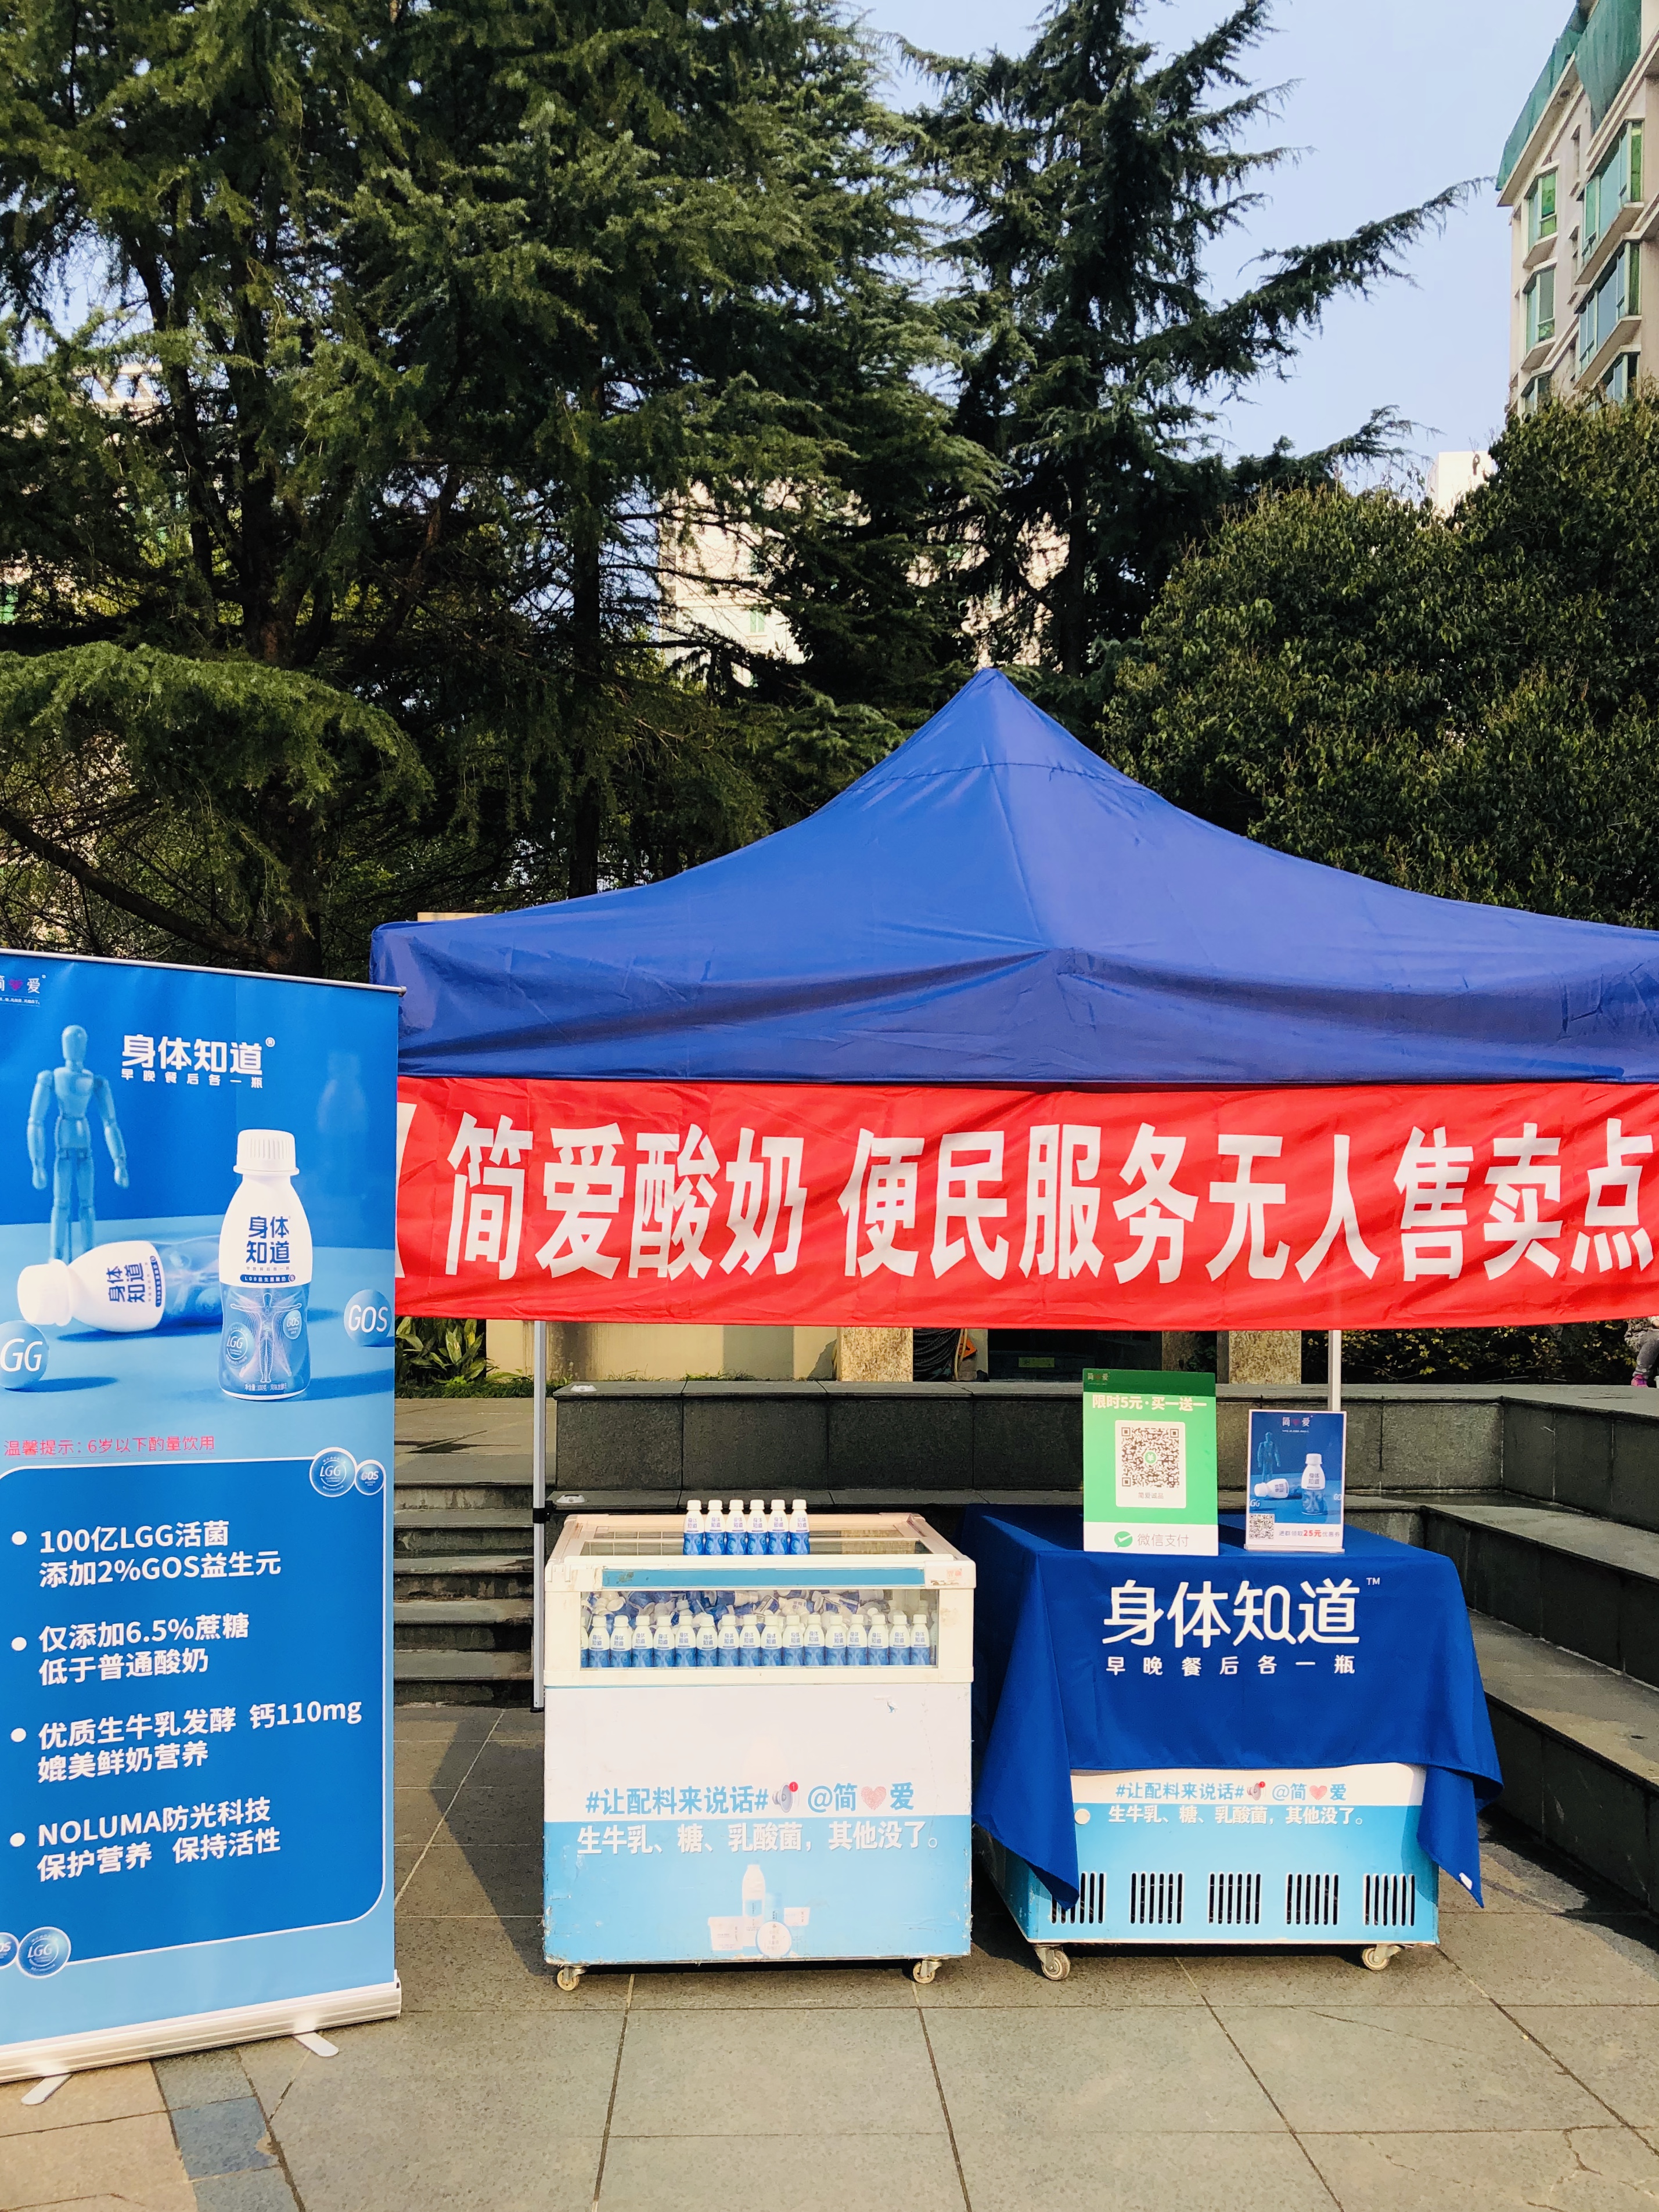 简爱酸奶社区无人售卖快闪活动-上海中海馨园